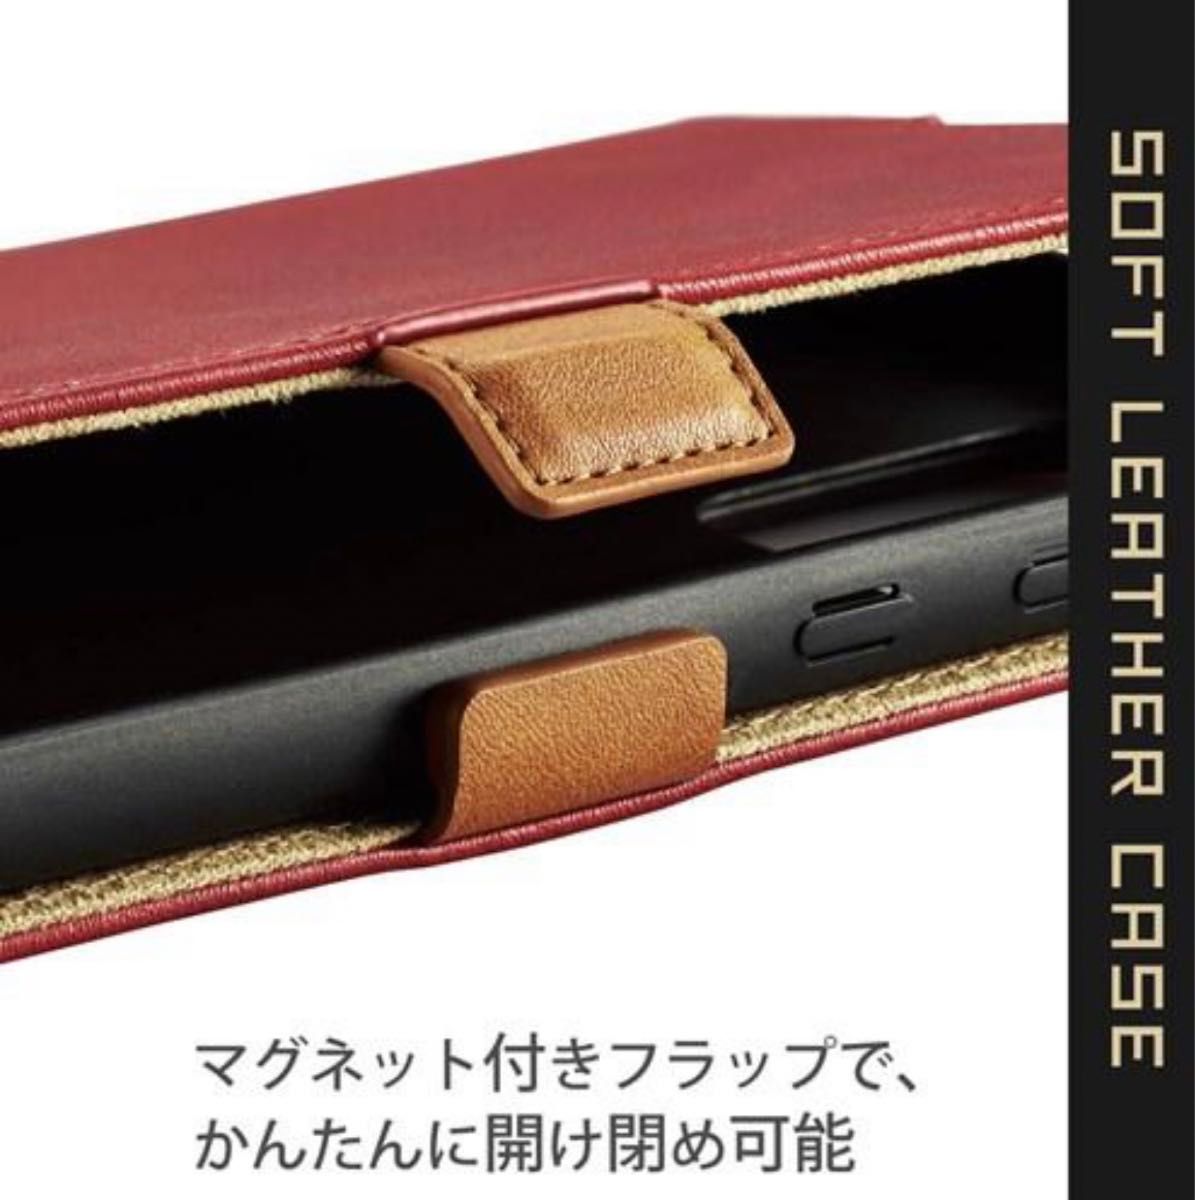 エレコム GalaxyA52 5G【SC‐53B】手帳型ケース　レッド　新品